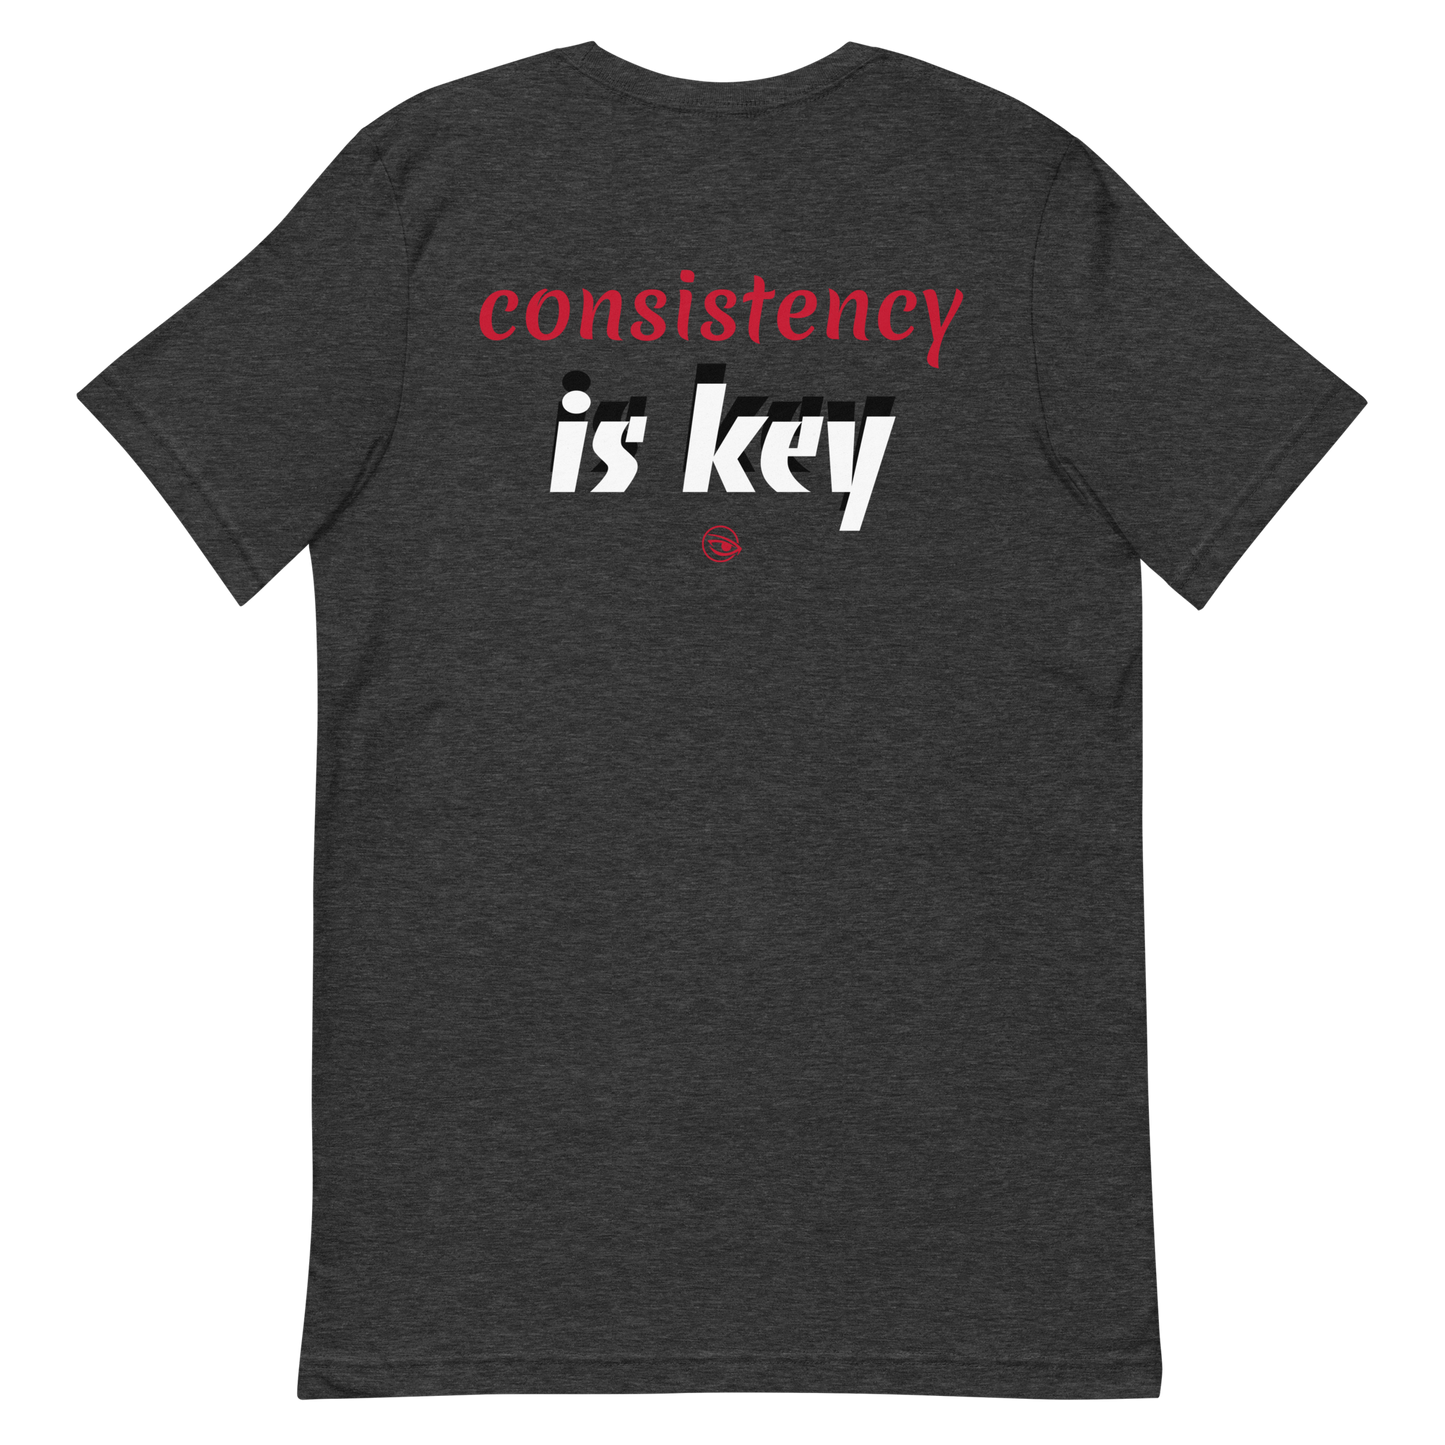 "CONSISTENCY IS KEY" FOCUS LOGO TEE